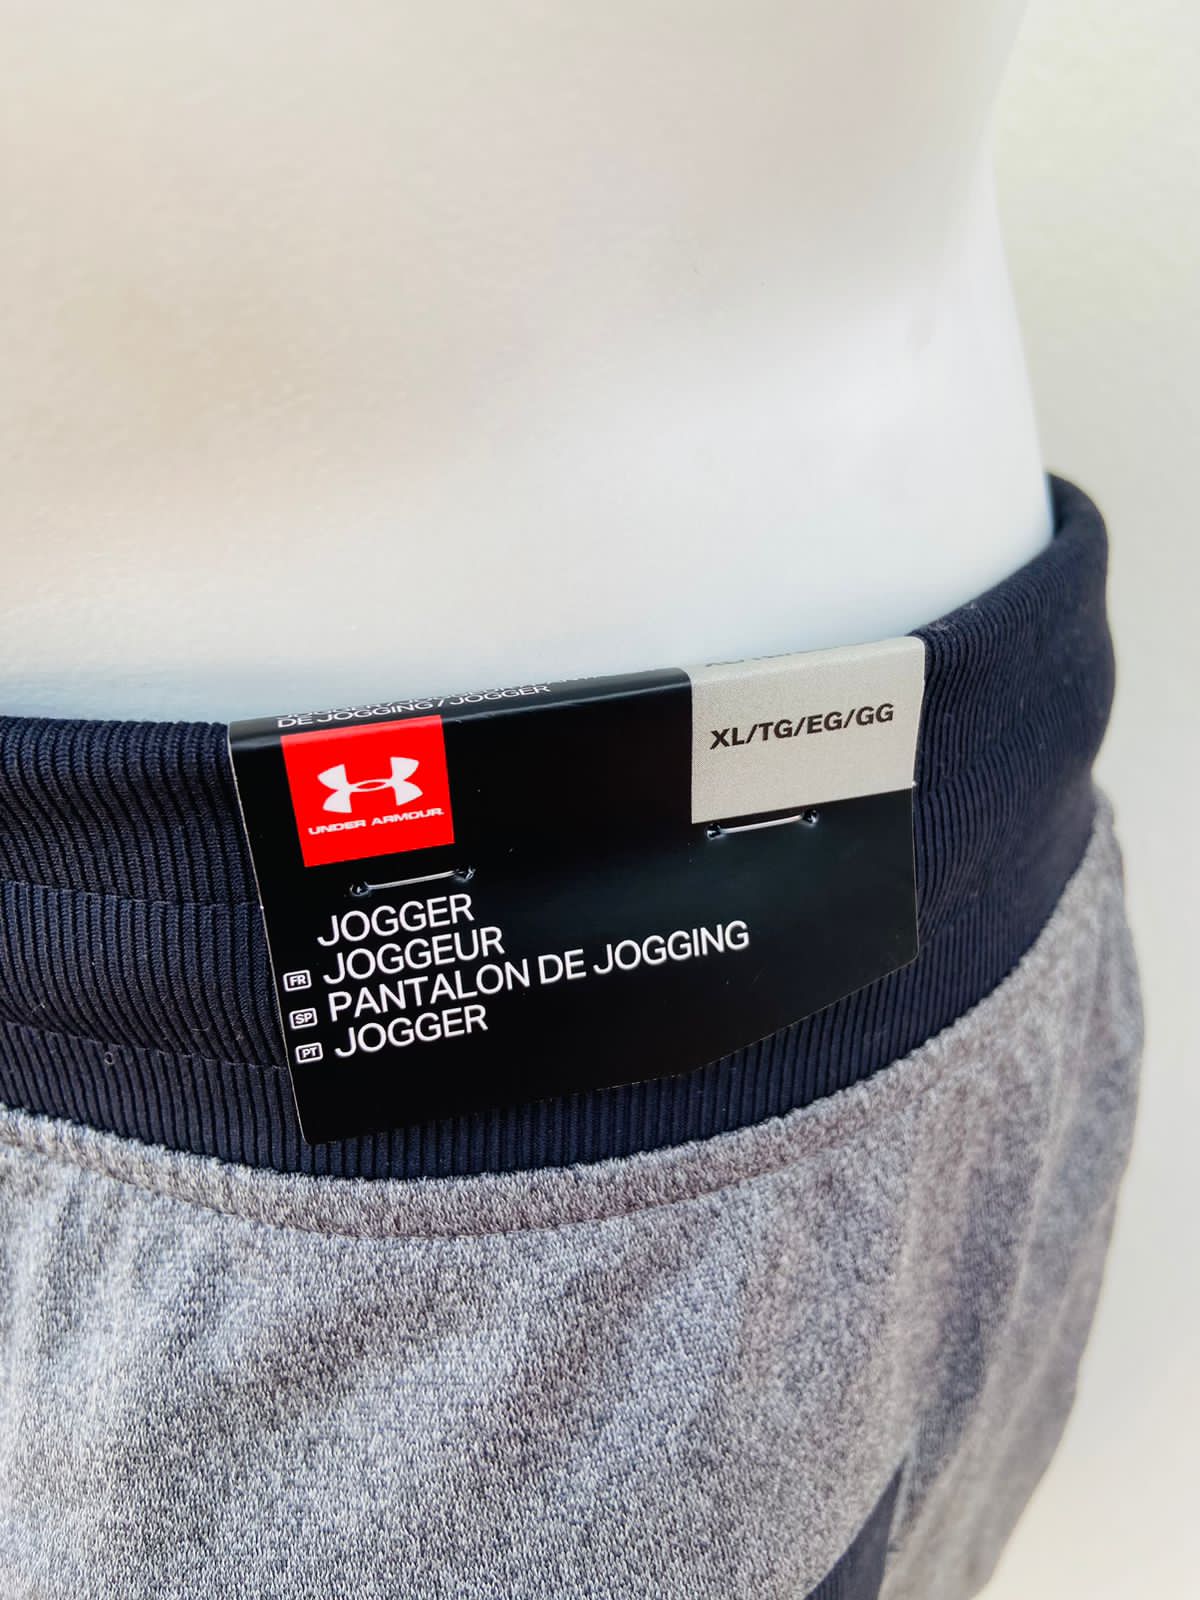 Pantalon/ Jogger UNDER ARMOUR original, gris oscuro con elástico de la cintura y borde de los bolsillos en color negro.